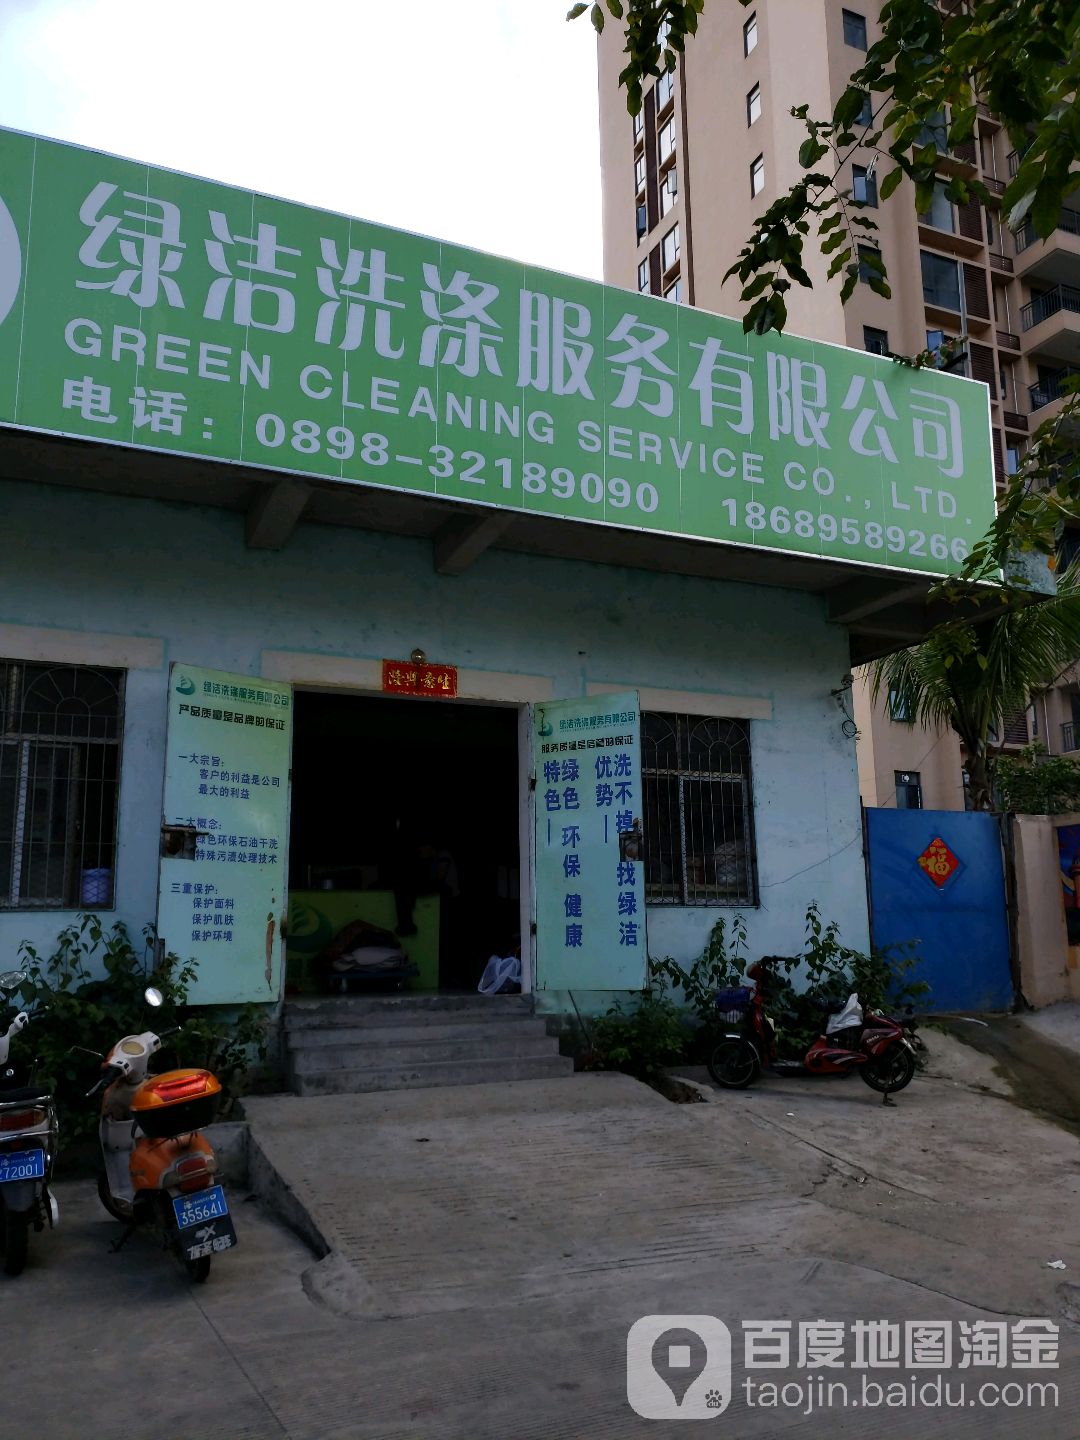 綠潔洗滌服務有限公司